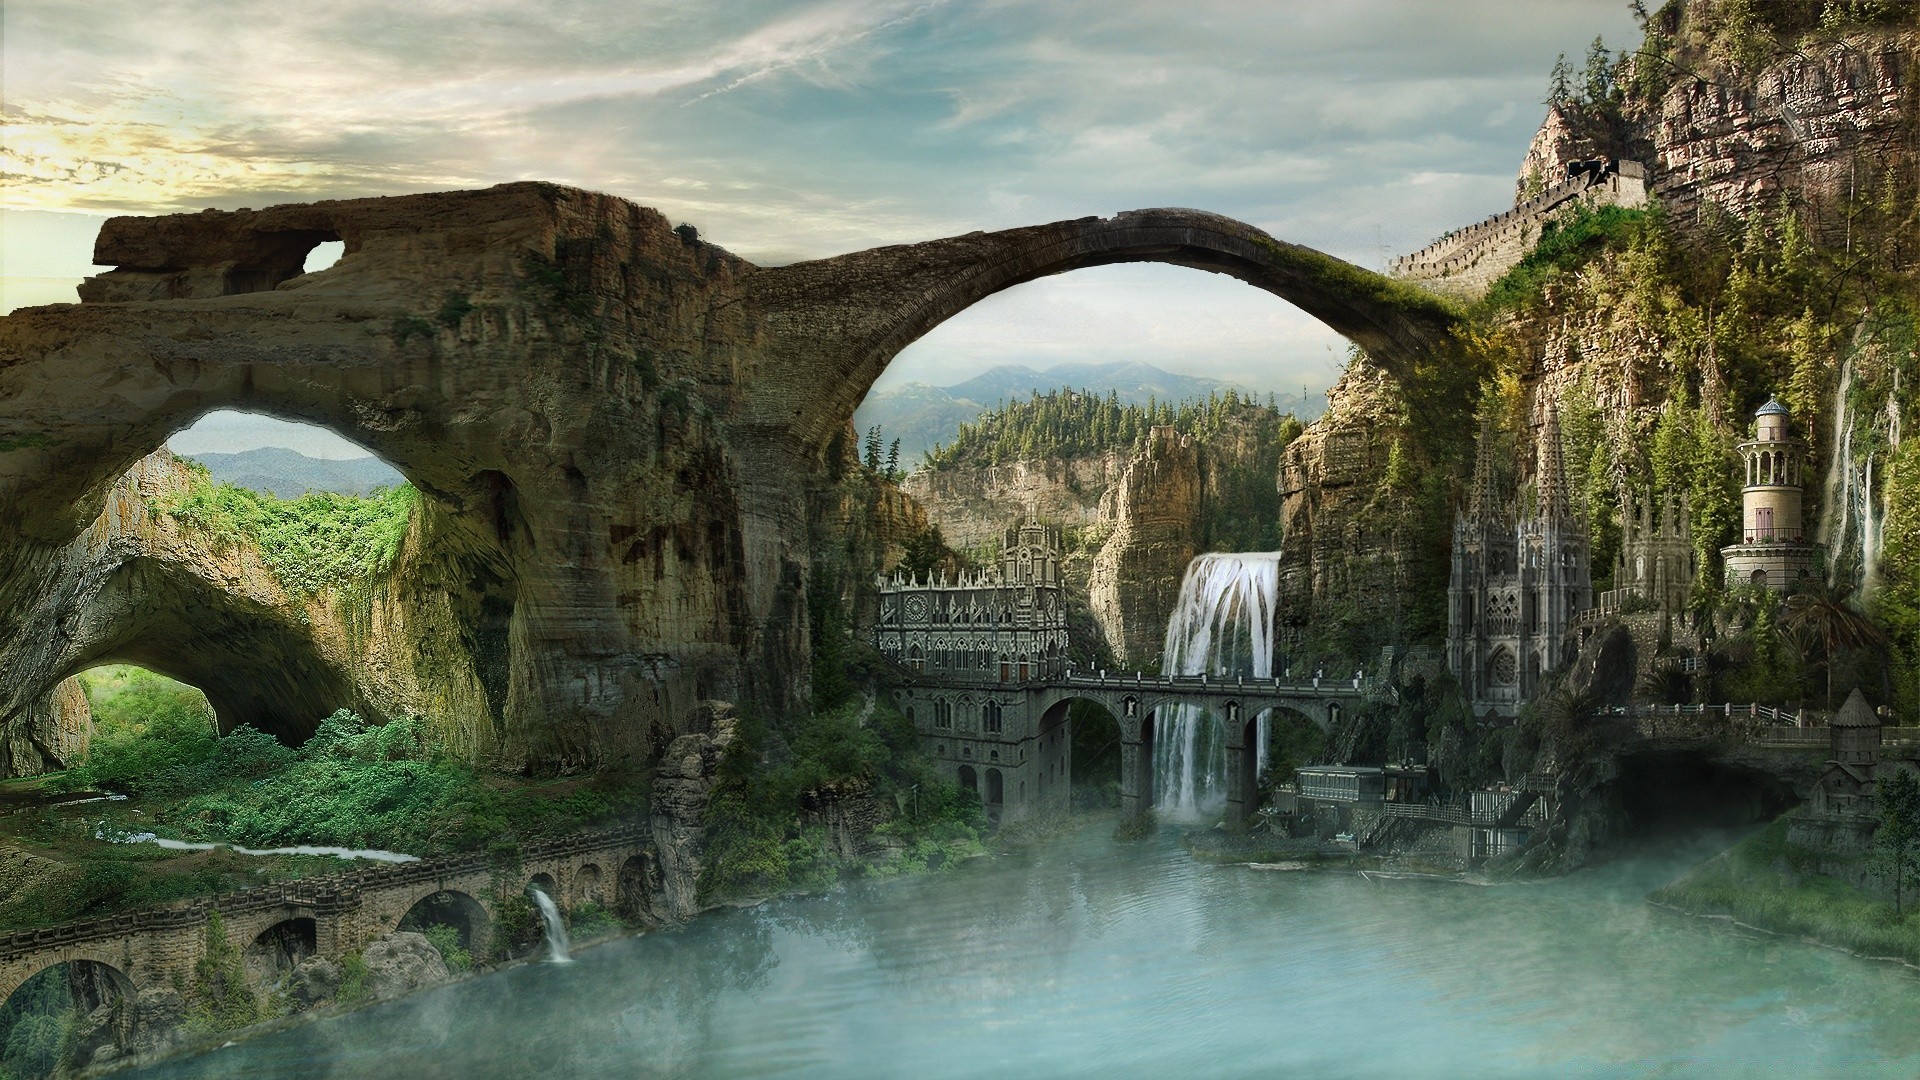 креатив воды путешествия река дерево архитектура туризм на открытом воздухе пейзаж мост природа арка камень живописный древние дом